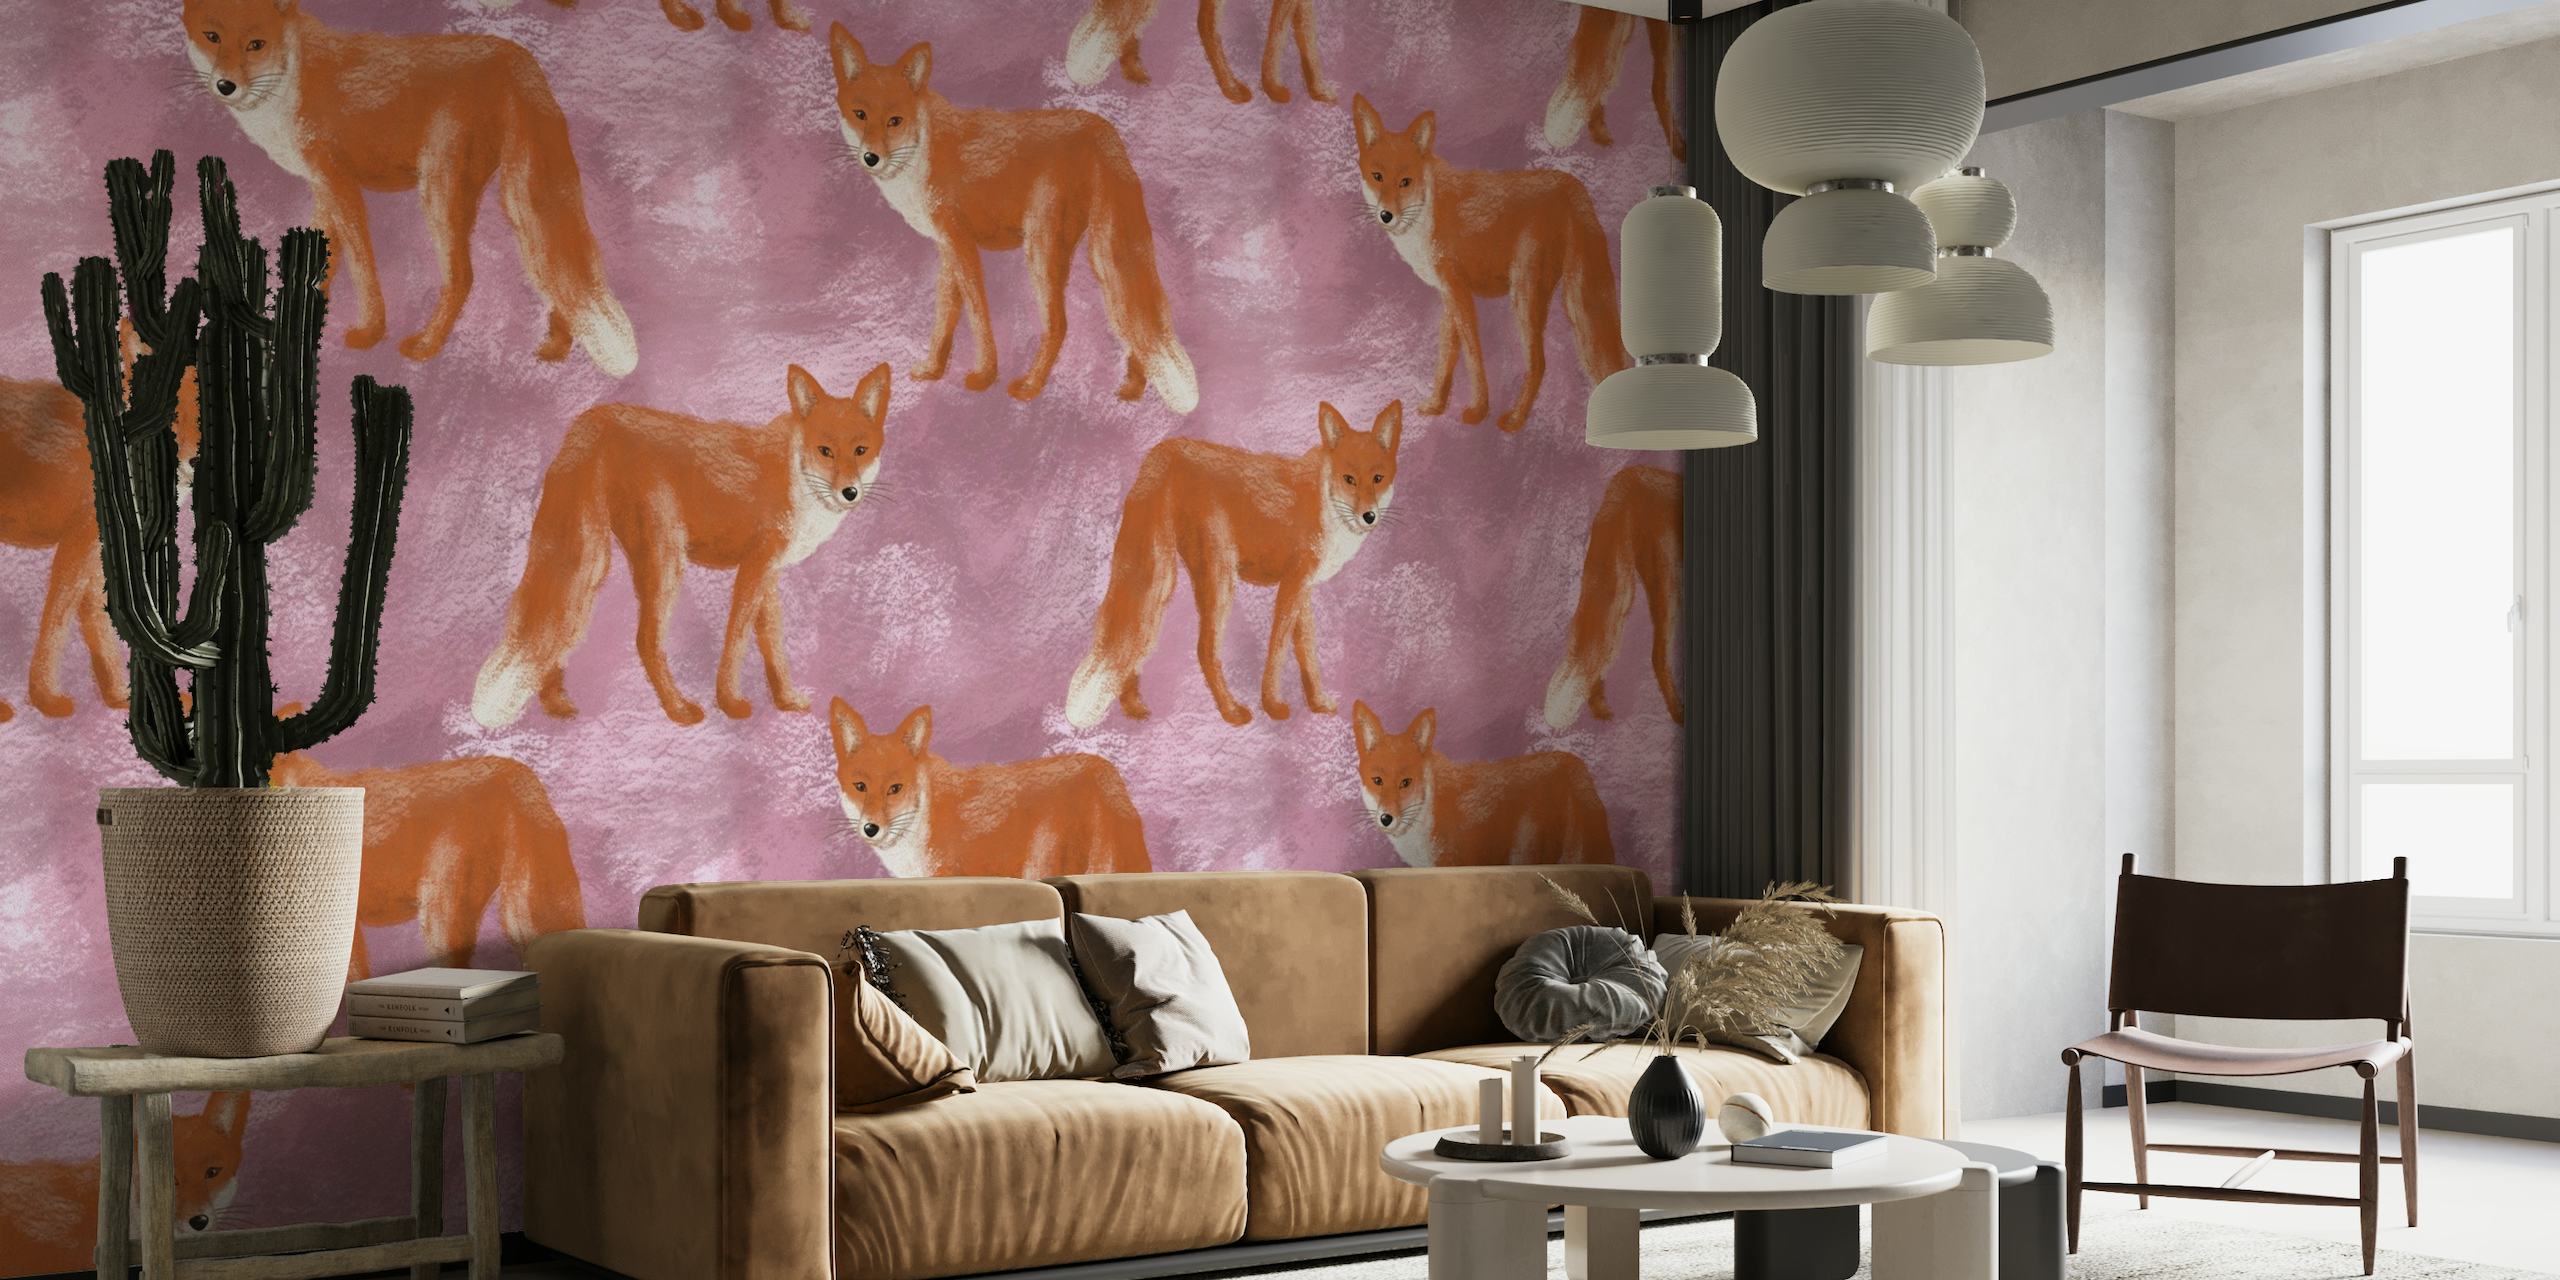 Finurlige ræve på et lyserødt gouache-baggrundsvægmaleri